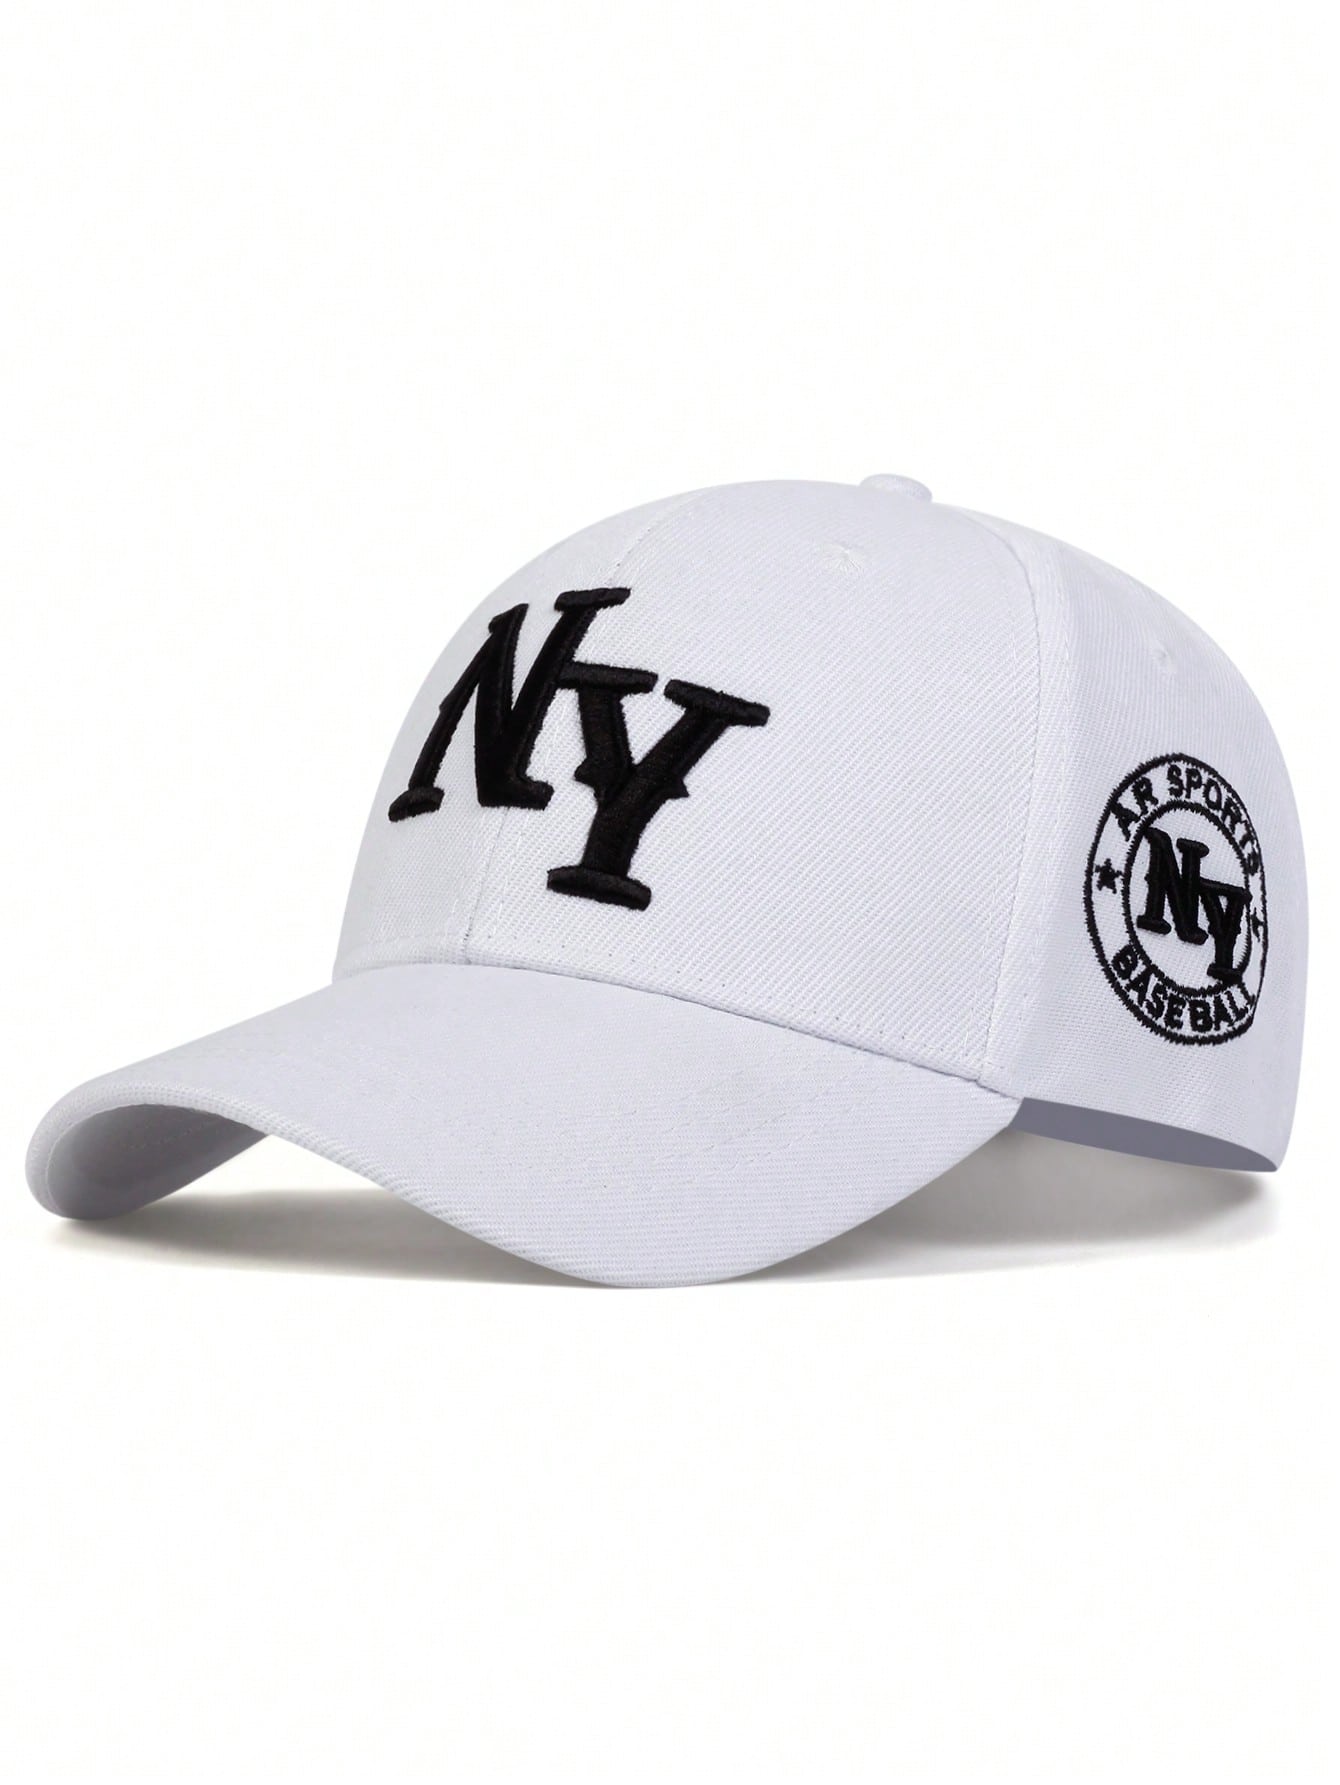 1 шт. мужская бейсболка с вышивкой букв «Нью-Йорк», белый